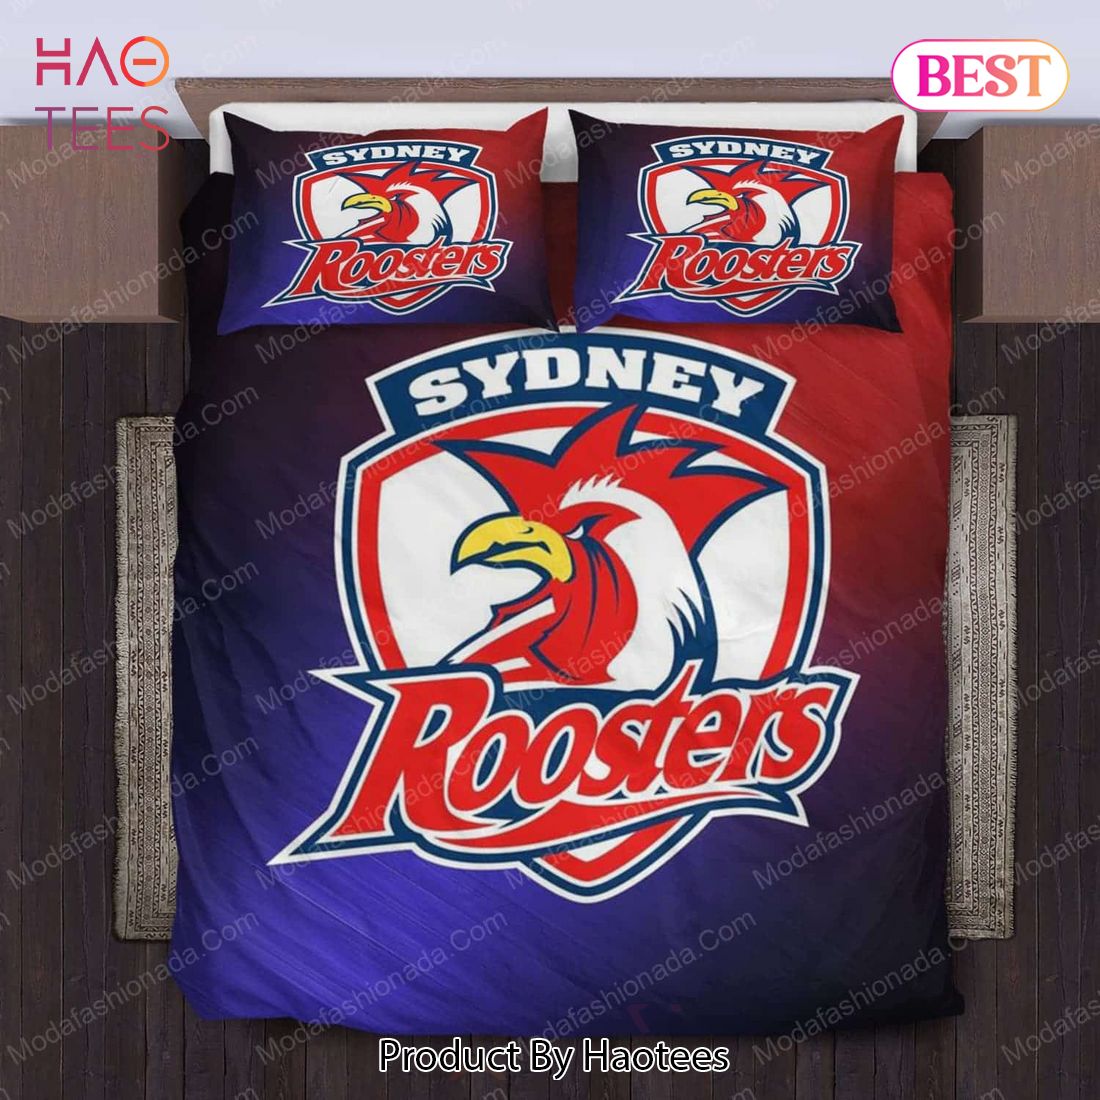 Sydney Roosters Logo Bedding Sets Bed Sets, Bedroom Sets, Comforter Sets, Duvet Cover, Bedspread